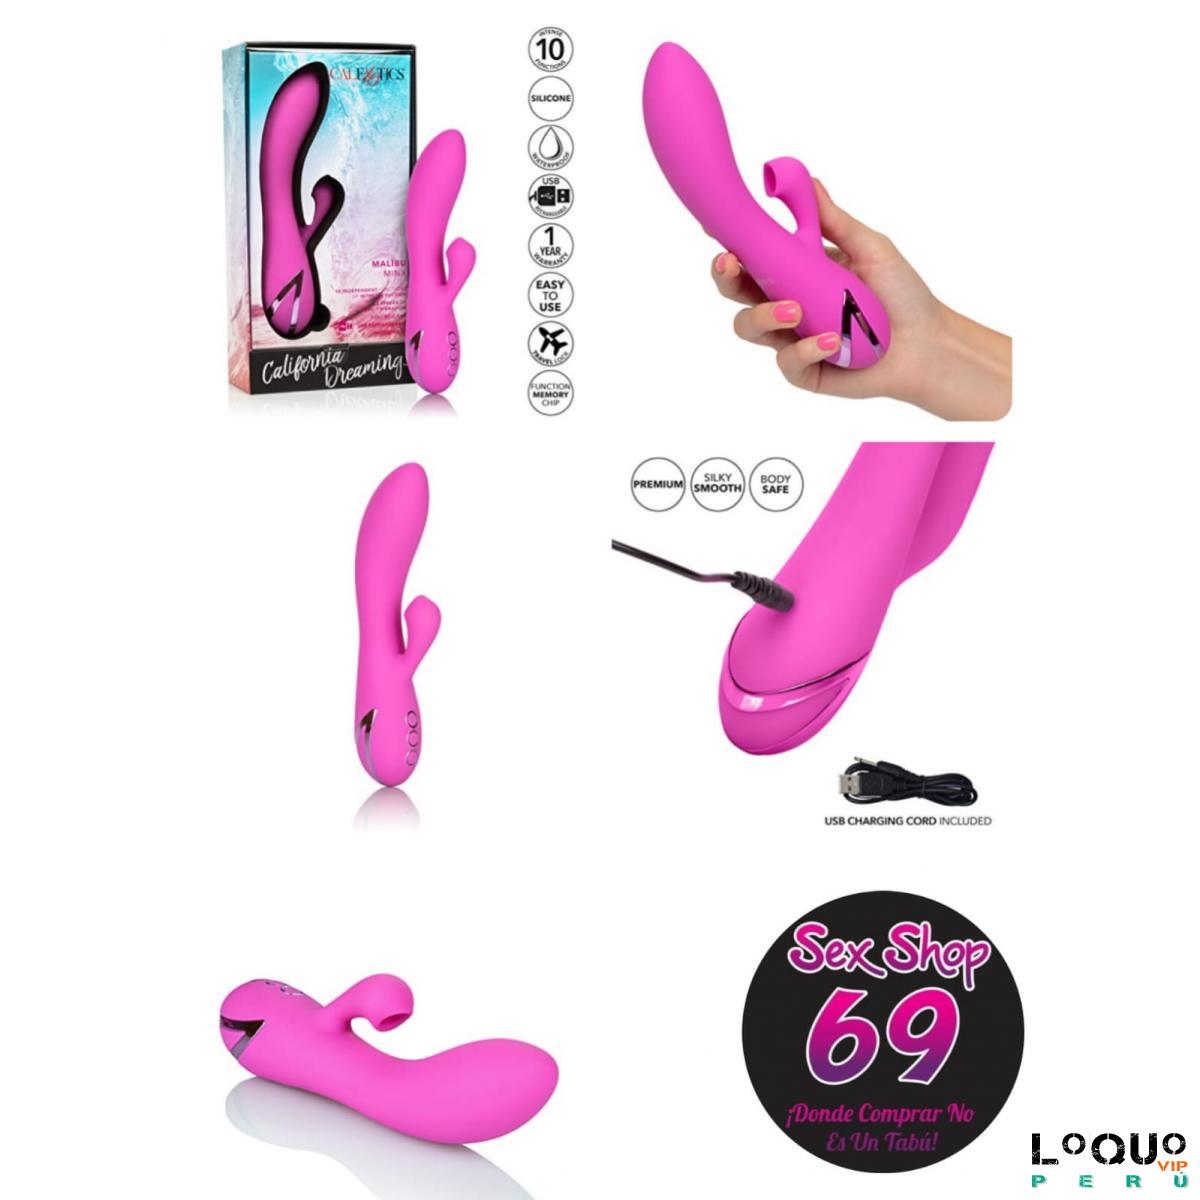 Sex Shop Arequipa: vibrador malibu_bunny_sexhop69_arequipa